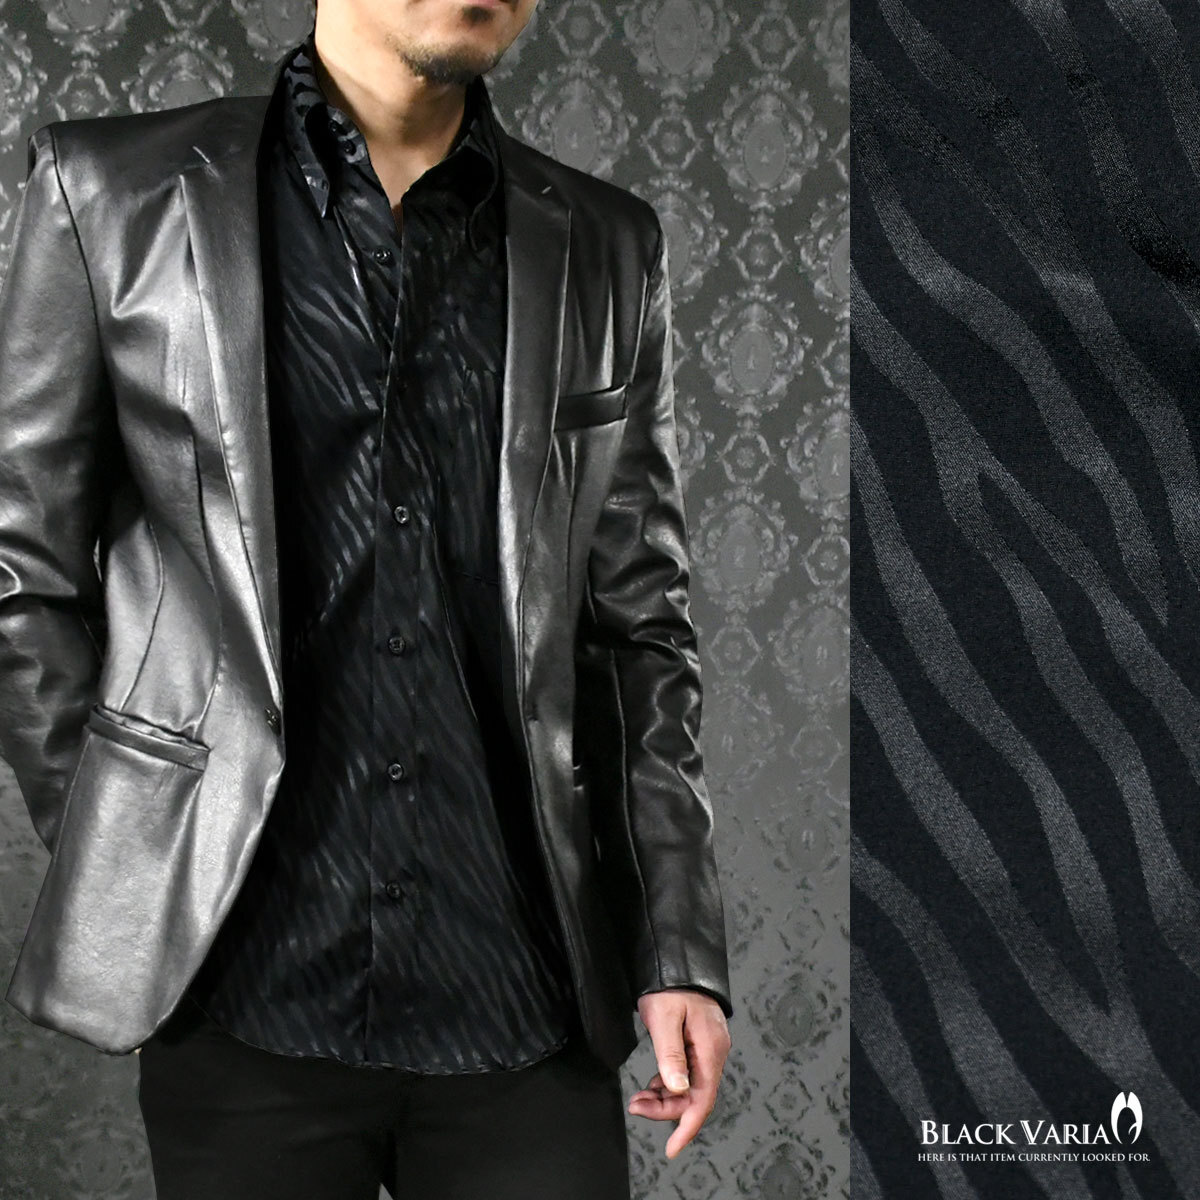 a181722-bk BLACK VARIA ドゥエボットーニ ゼブラ柄 ジャガード レギュラーカラードレスシャツ 日本製 メンズ(ブラック黒) S ステージ衣装_レギュラーカラー